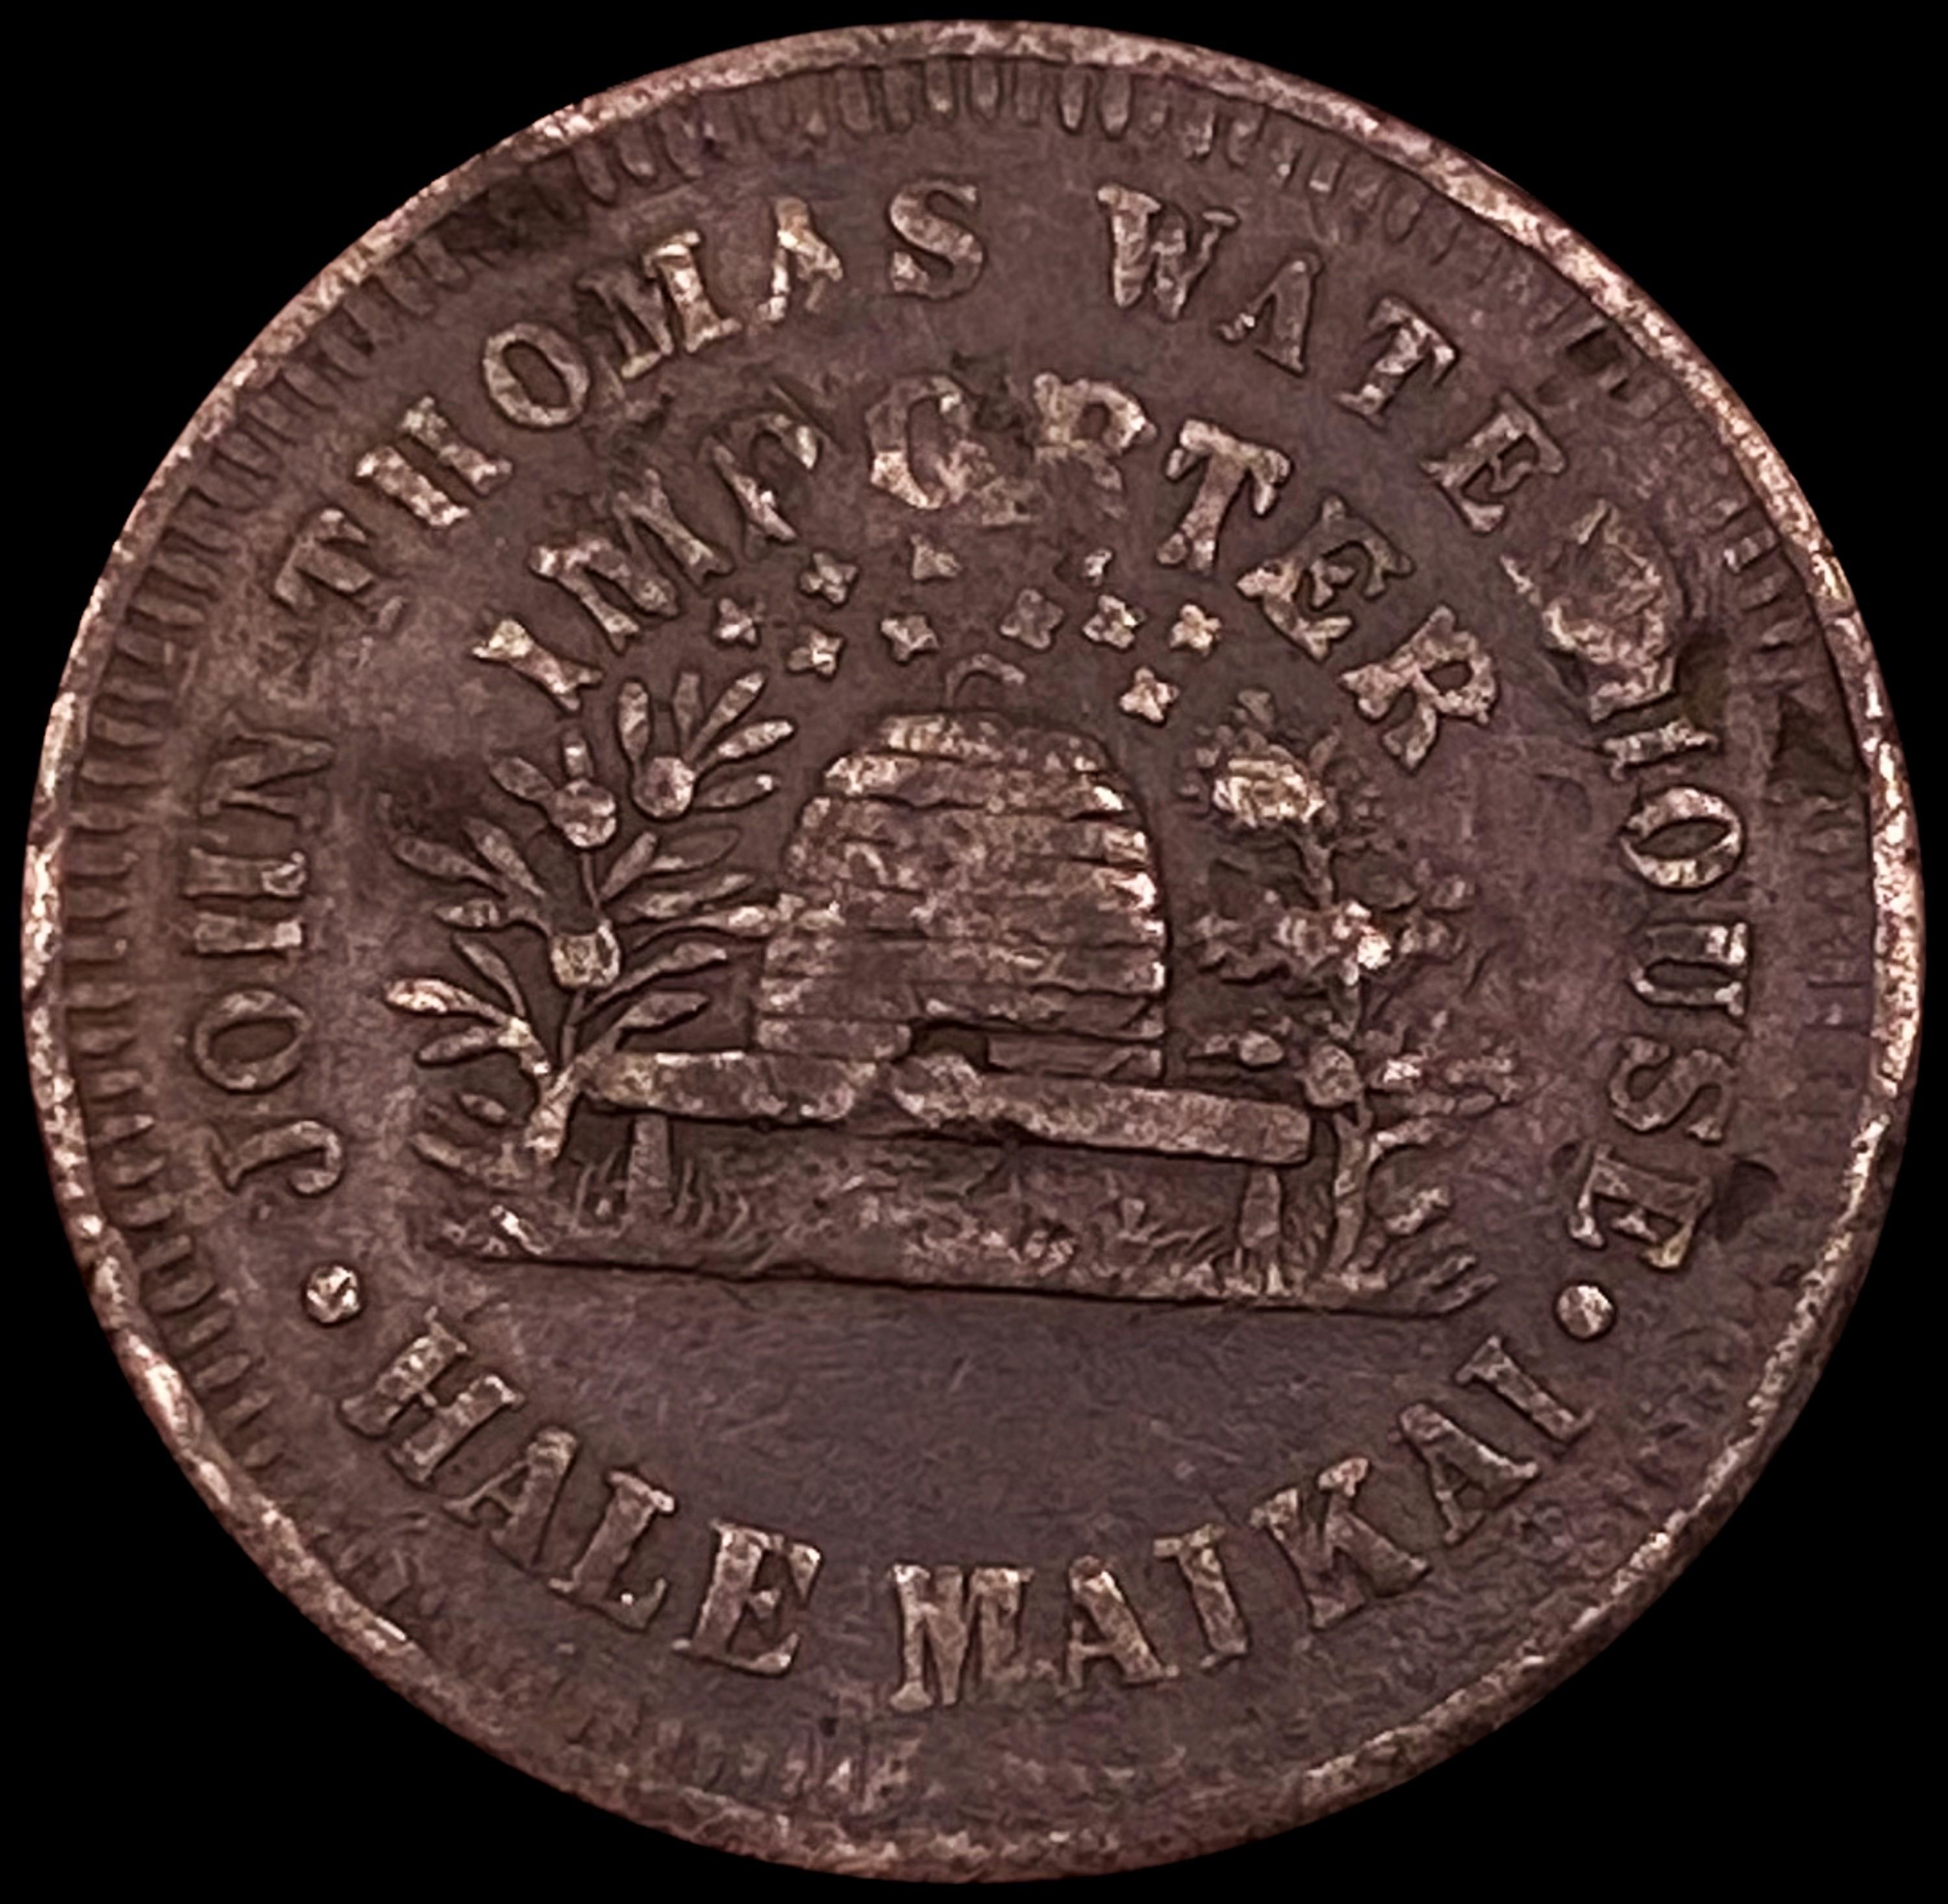 1860 Hawaii John Thomas Waterhouse Token NEARLY UN